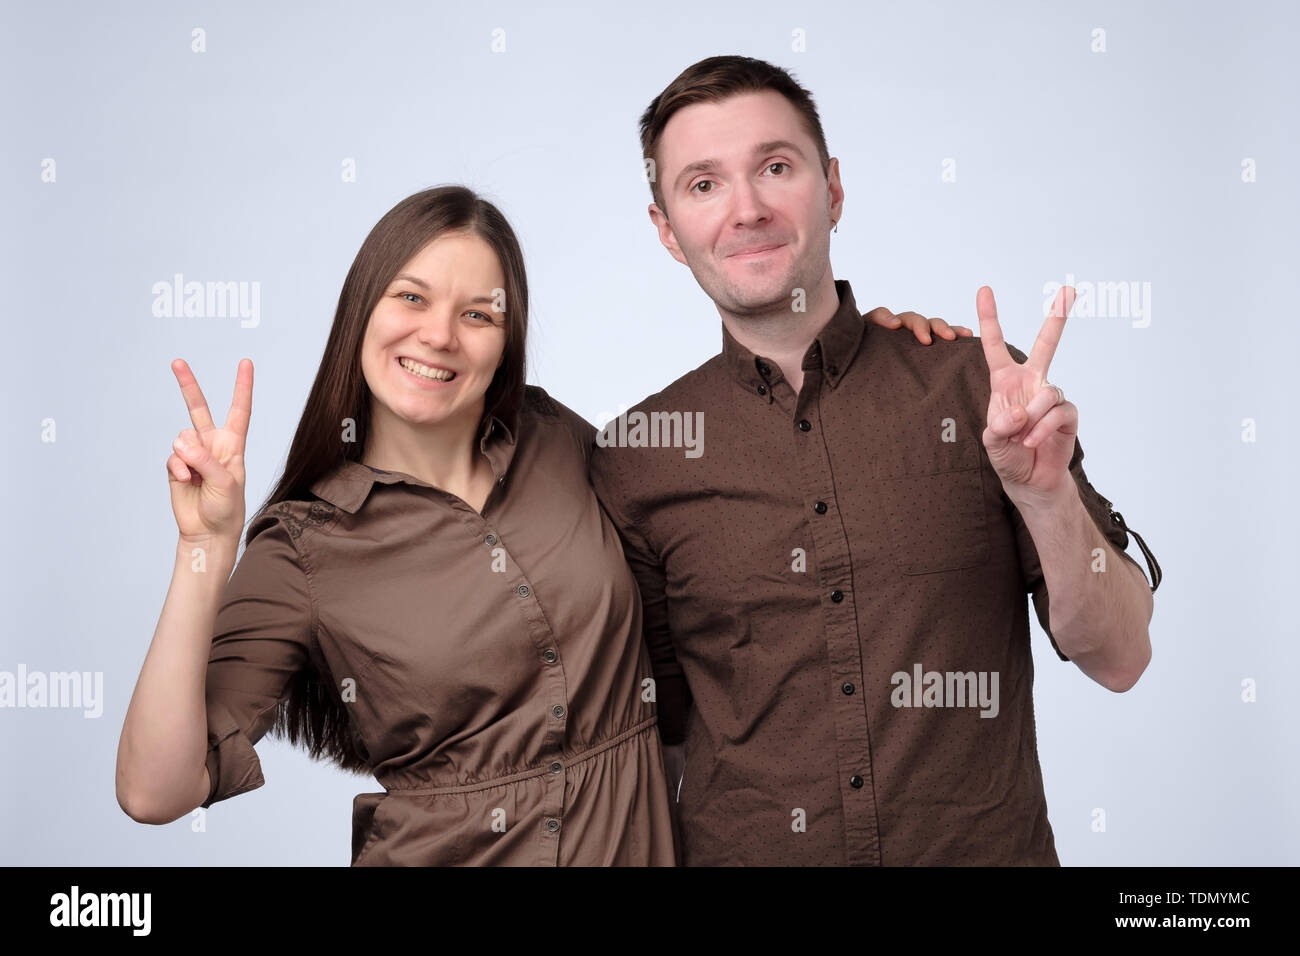 Paar Making Peace oder Sieg mit Zeige- und Mittelfinger Stockfoto